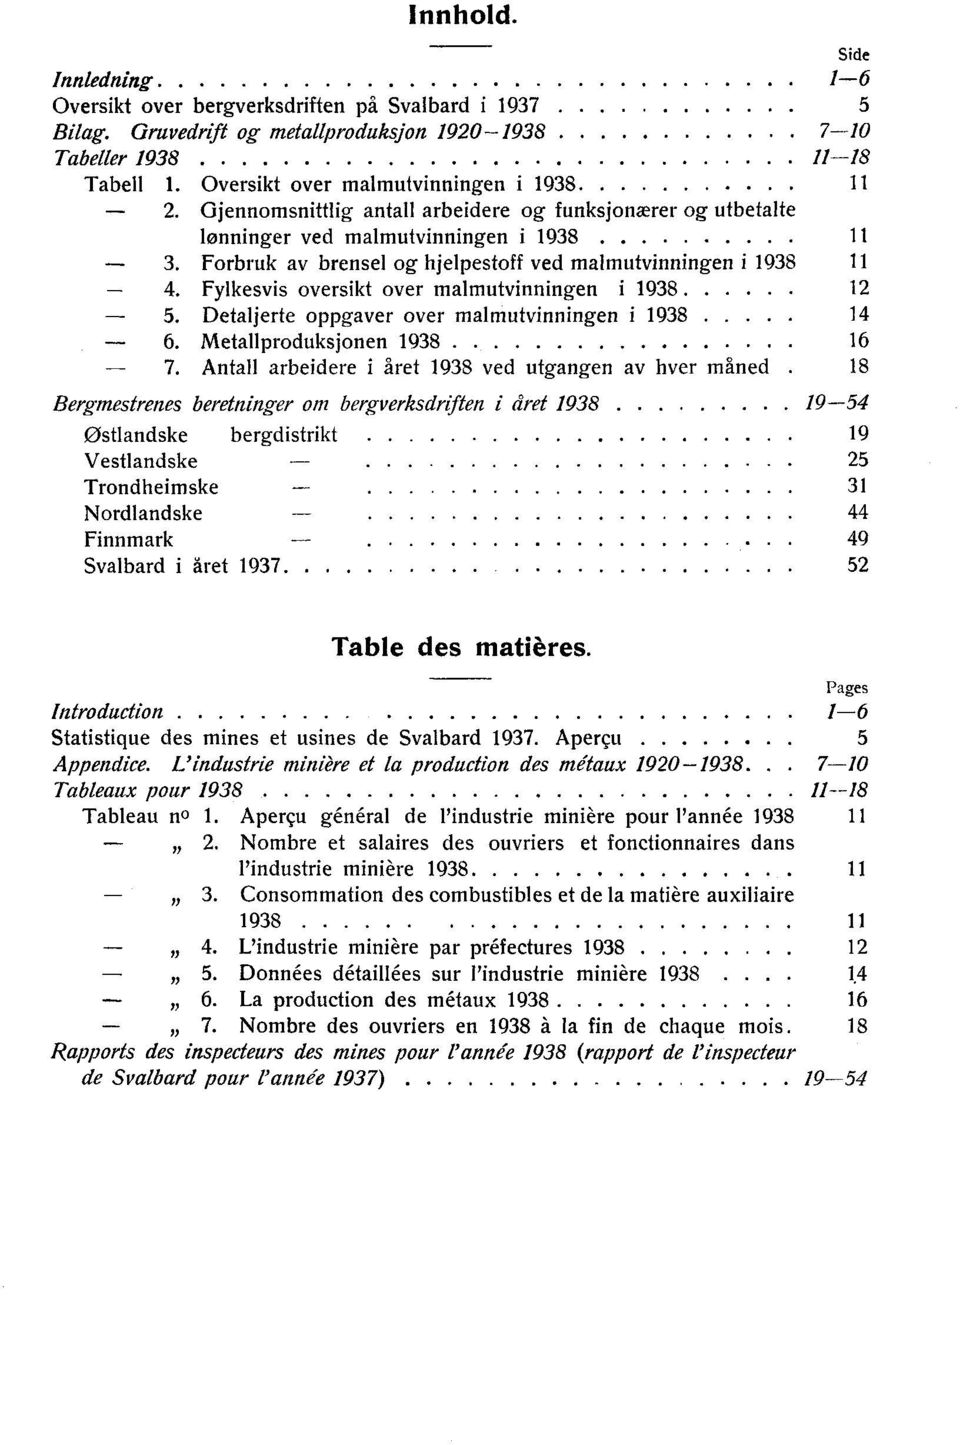 Forbruk av brensel og hjelpestoff ved malmutvinningen i 1938 11-4. Fylkesvis oversikt over malmutvinningen i 1938 12-5. Detaljerte oppgaver over malmutvinningen i 1938 14-6.